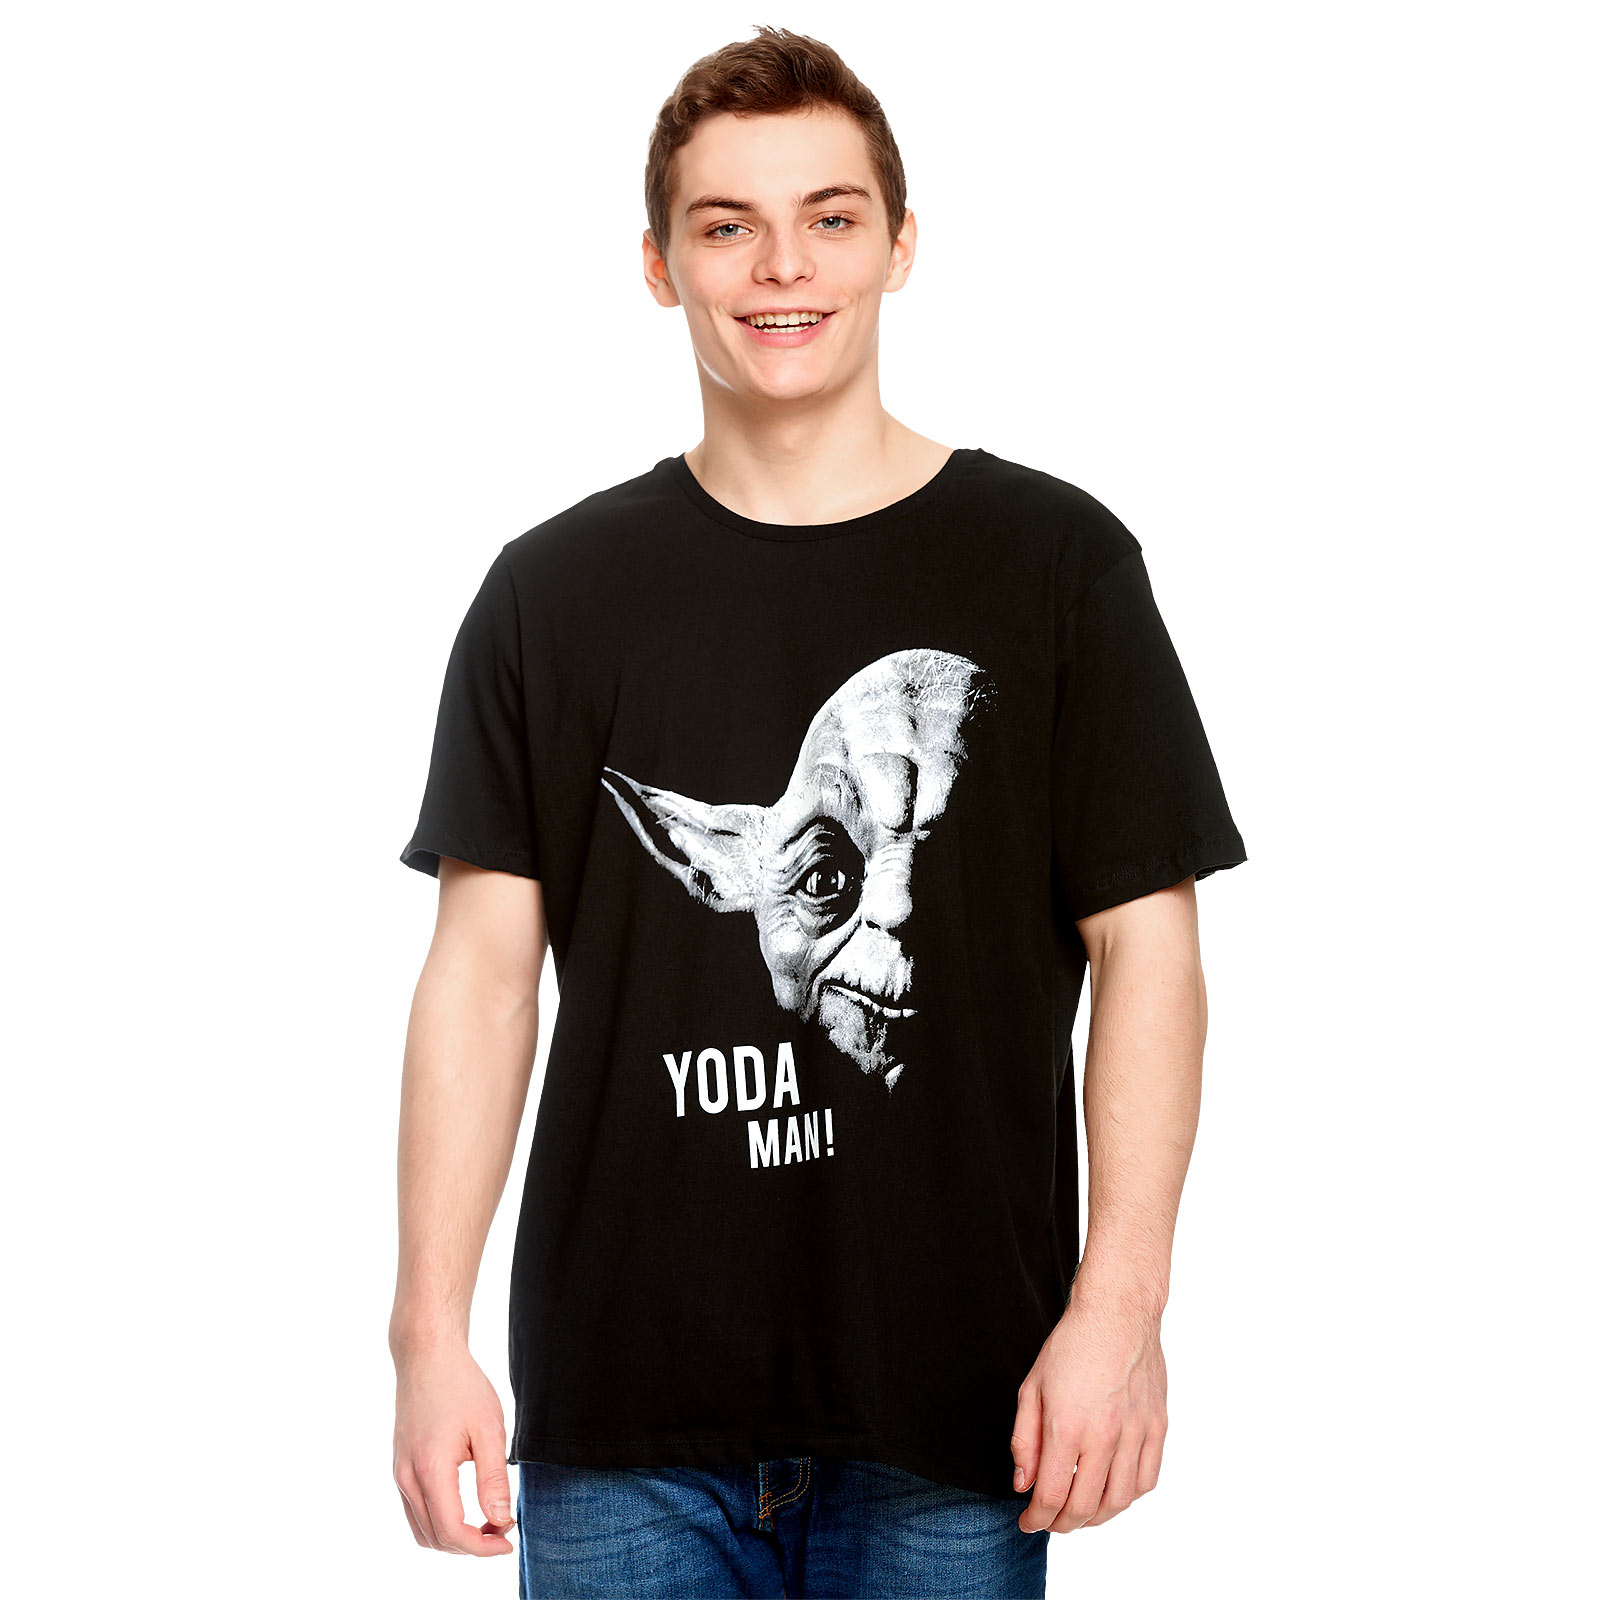 Star Wars - Yoda Man! T-Shirt noir